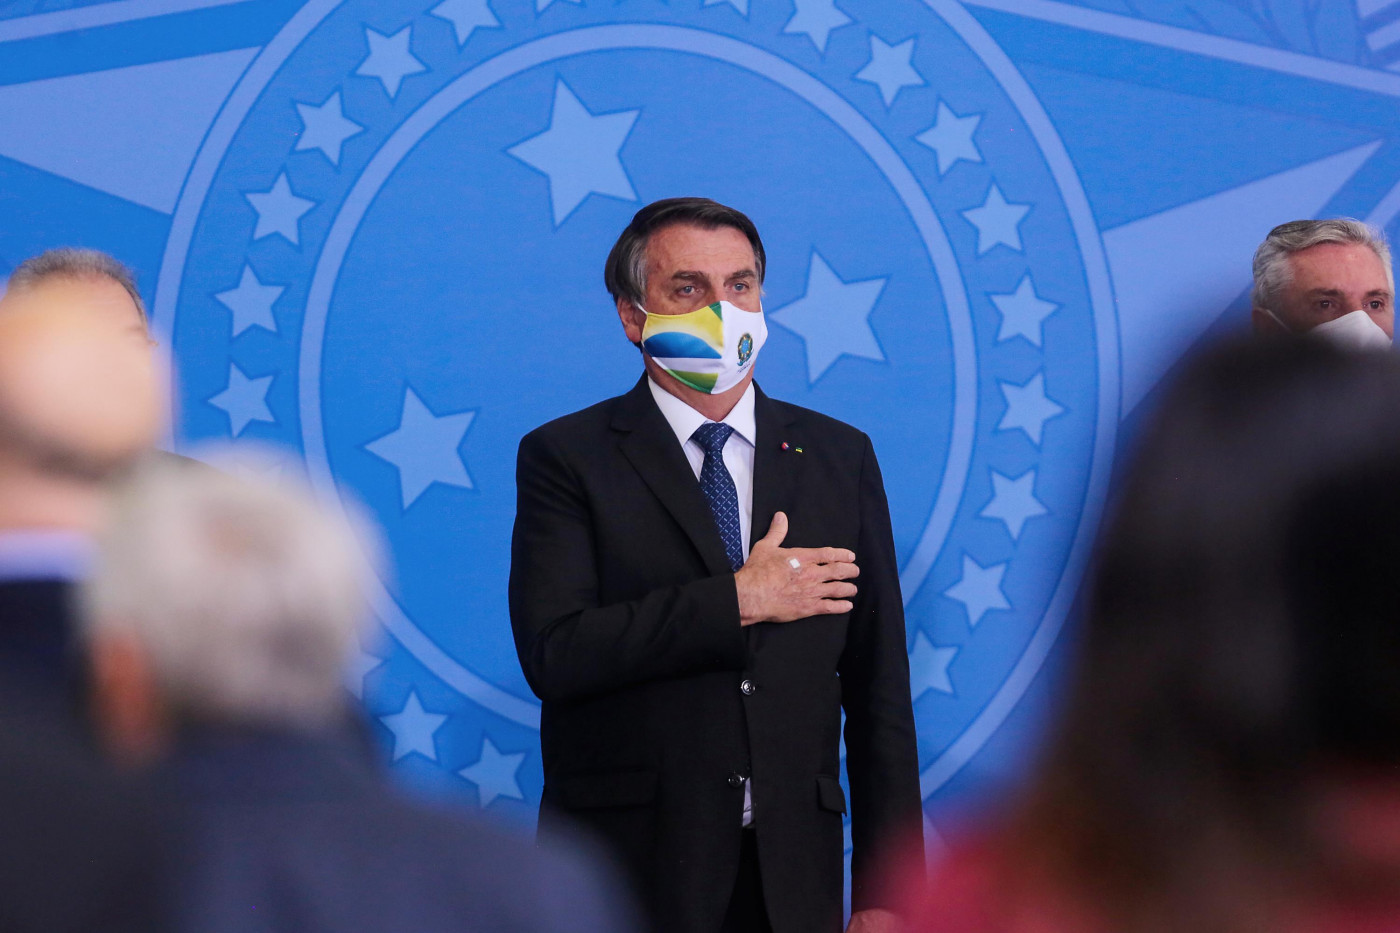 O presidente da república, Jair Bolsonaro, durante cerimônia em Brasília